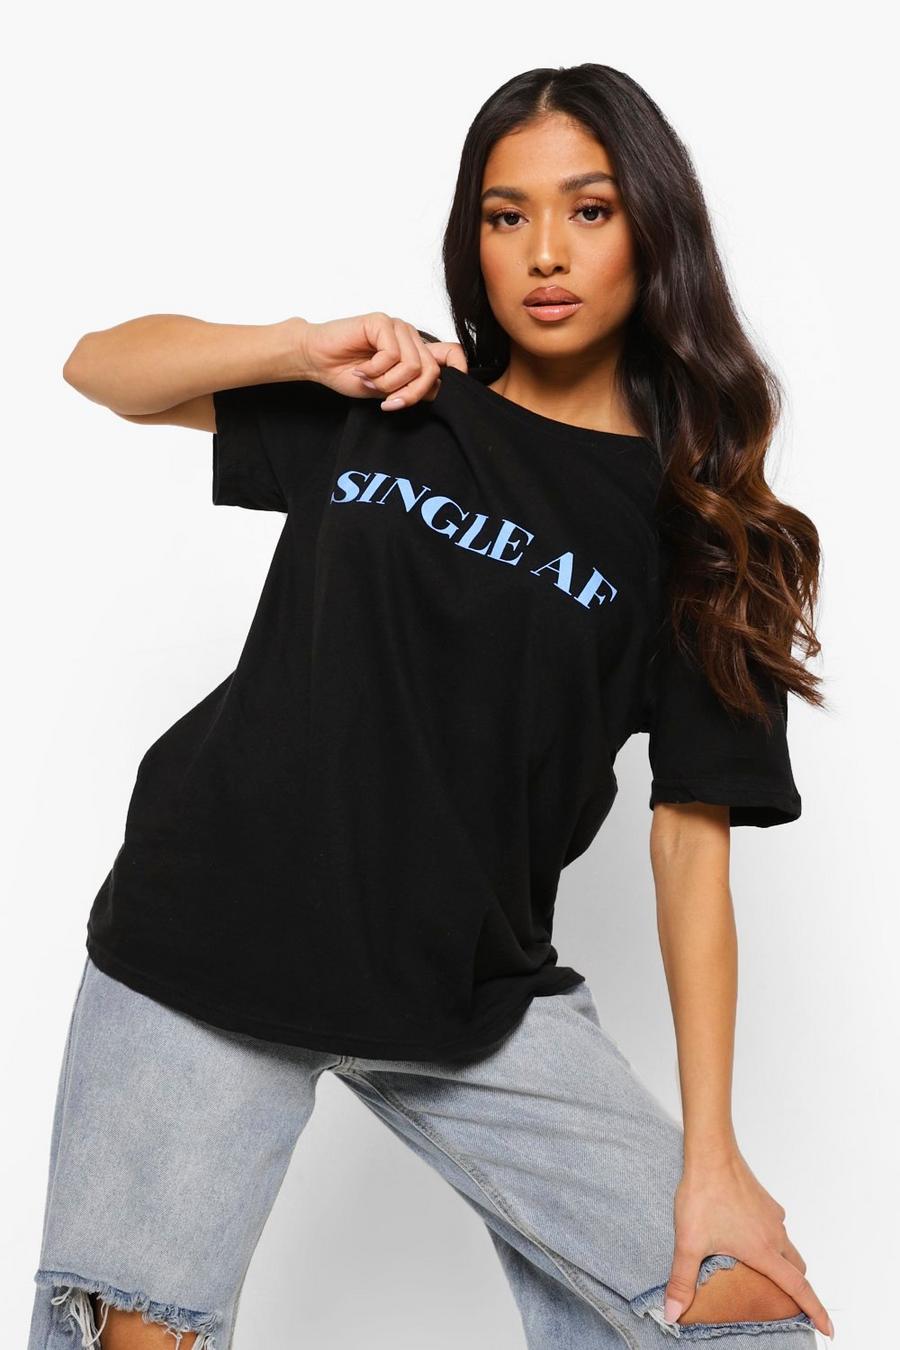 Camiseta con eslogan “Single Af” Petite, Negro image number 1